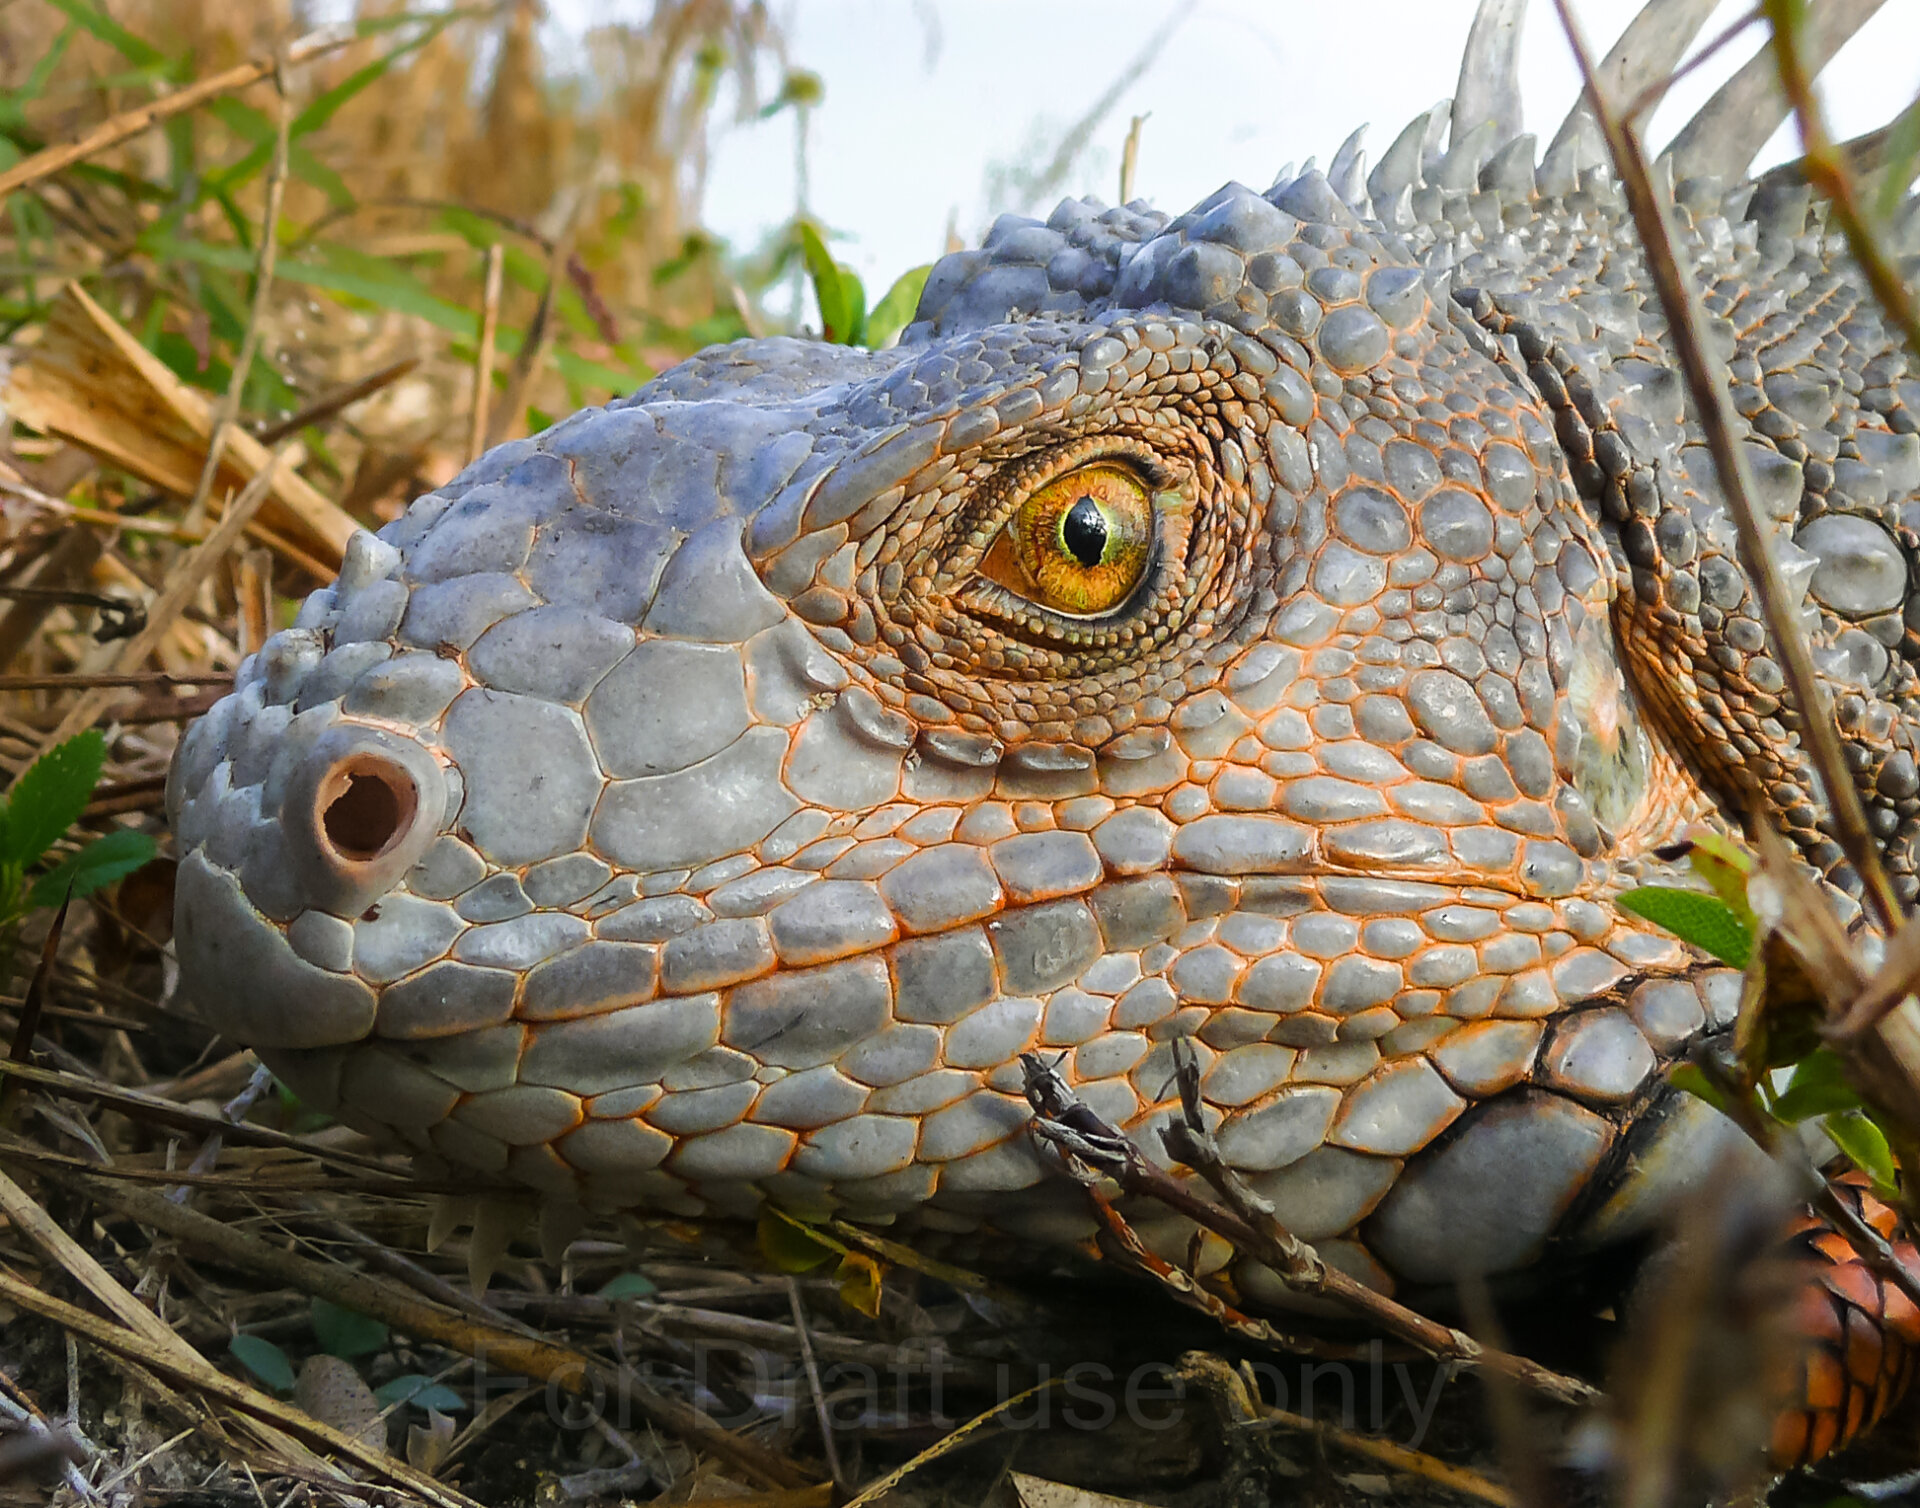 Close-up of iguana face